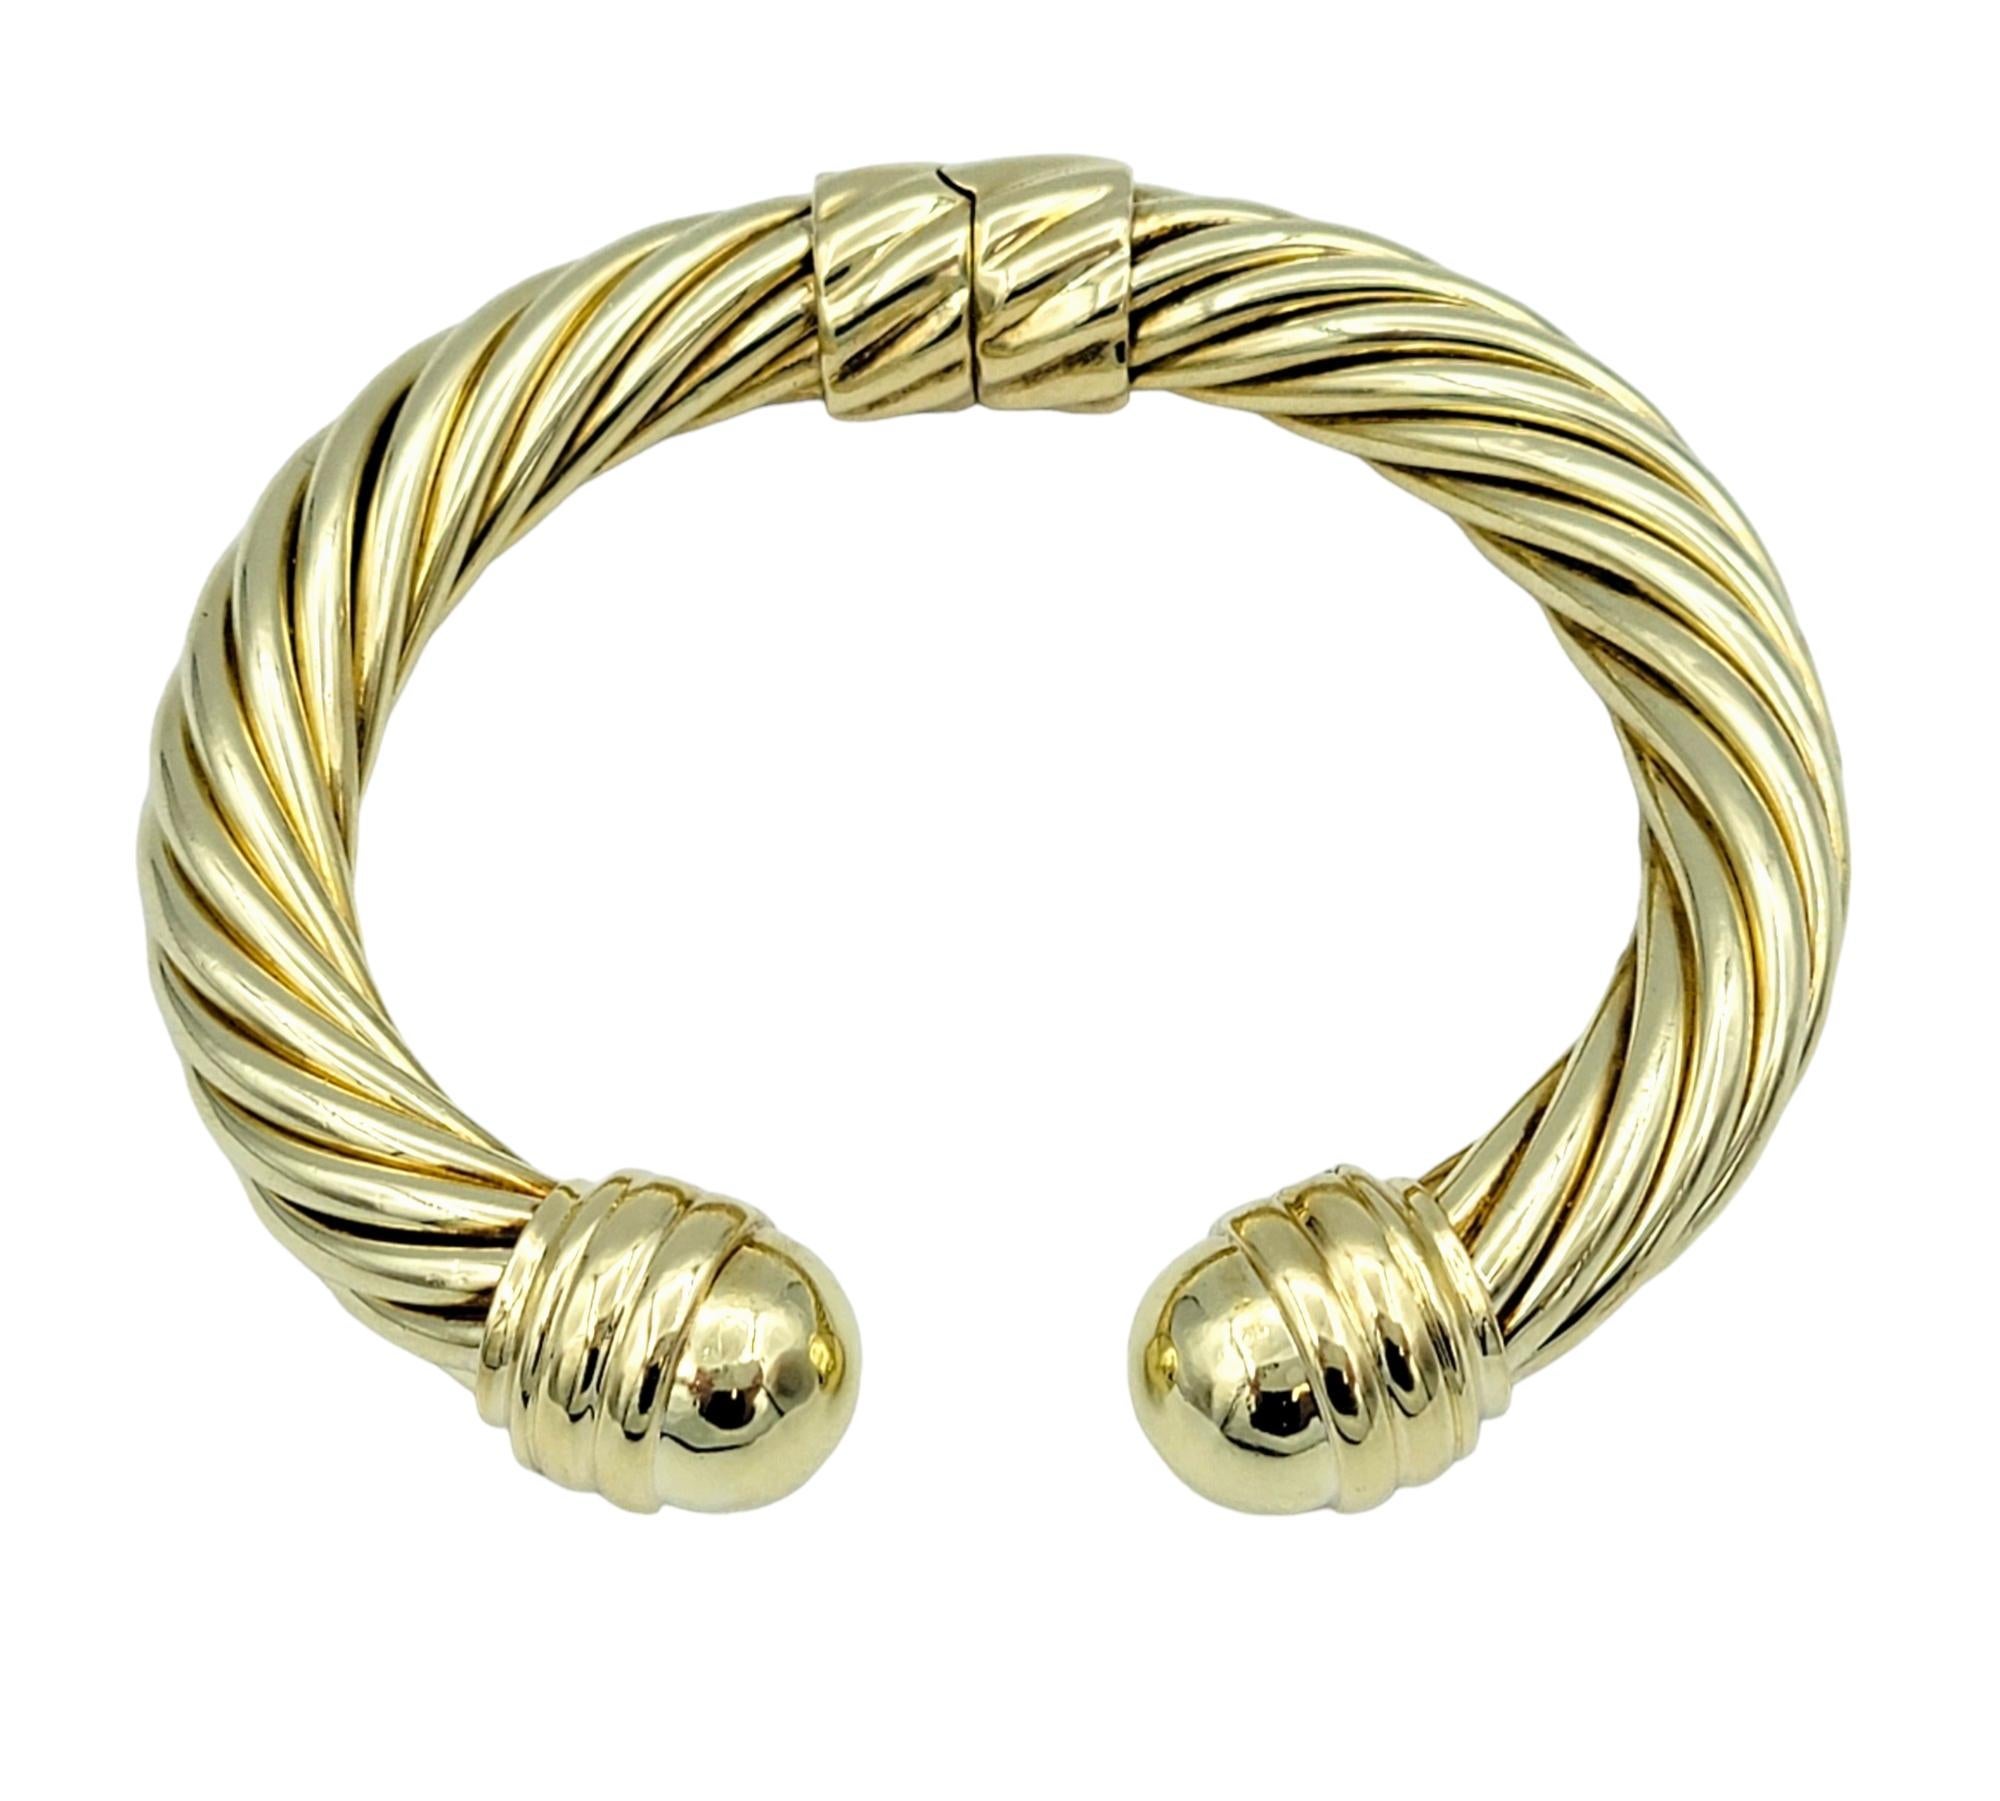 Le bracelet manchette David Yurman Cable Classics, réalisé en luxueux or jaune 14 carats, est un bijou intemporel et emblématique. Son design présente le motif de câble torsadé emblématique de la marque, mettant en valeur un travail artisanal